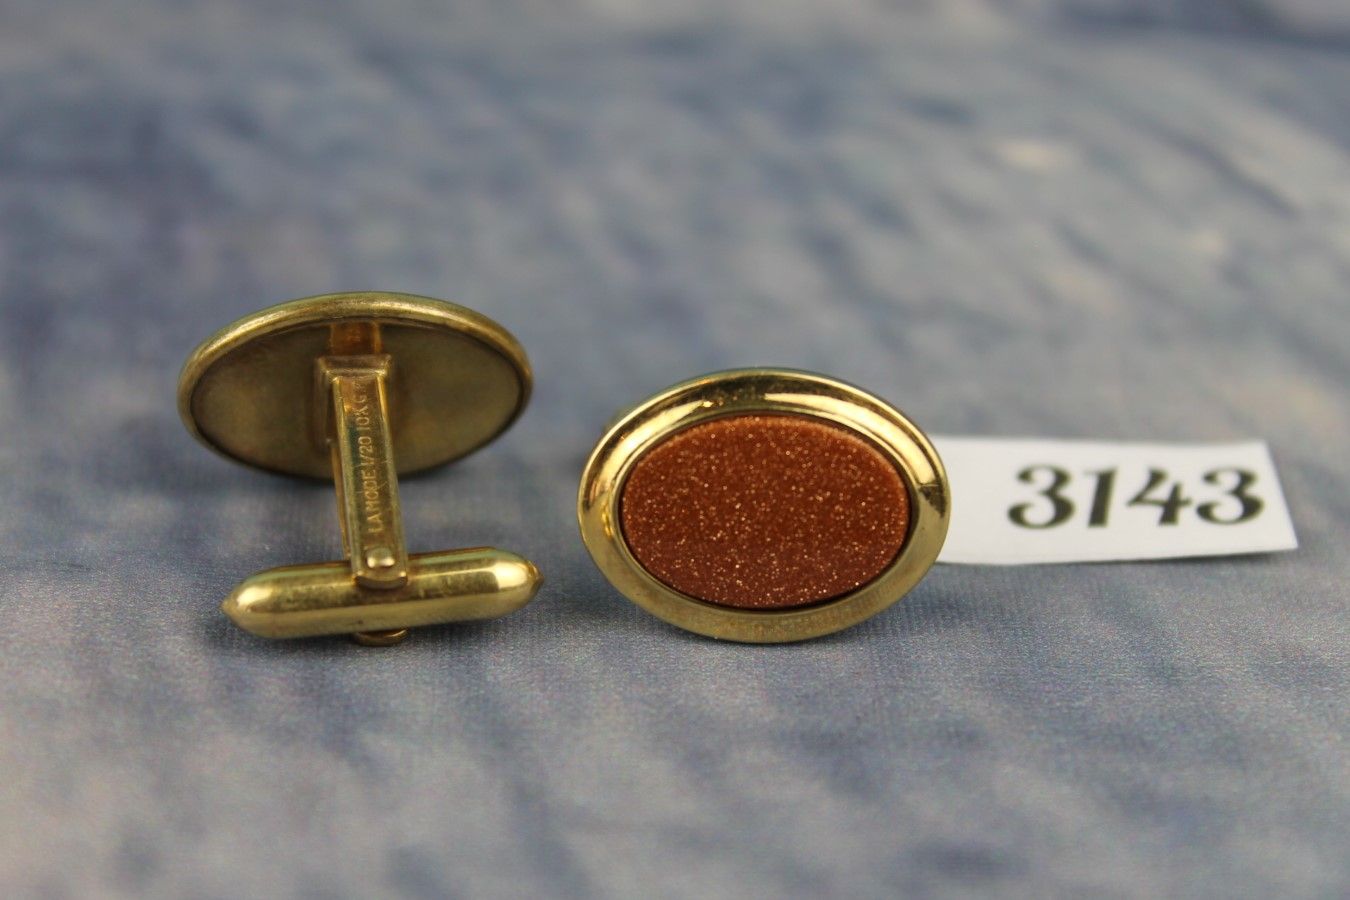 Vintage La Mode 1/20 10k Gold Filled Gold Stone Cufflinks